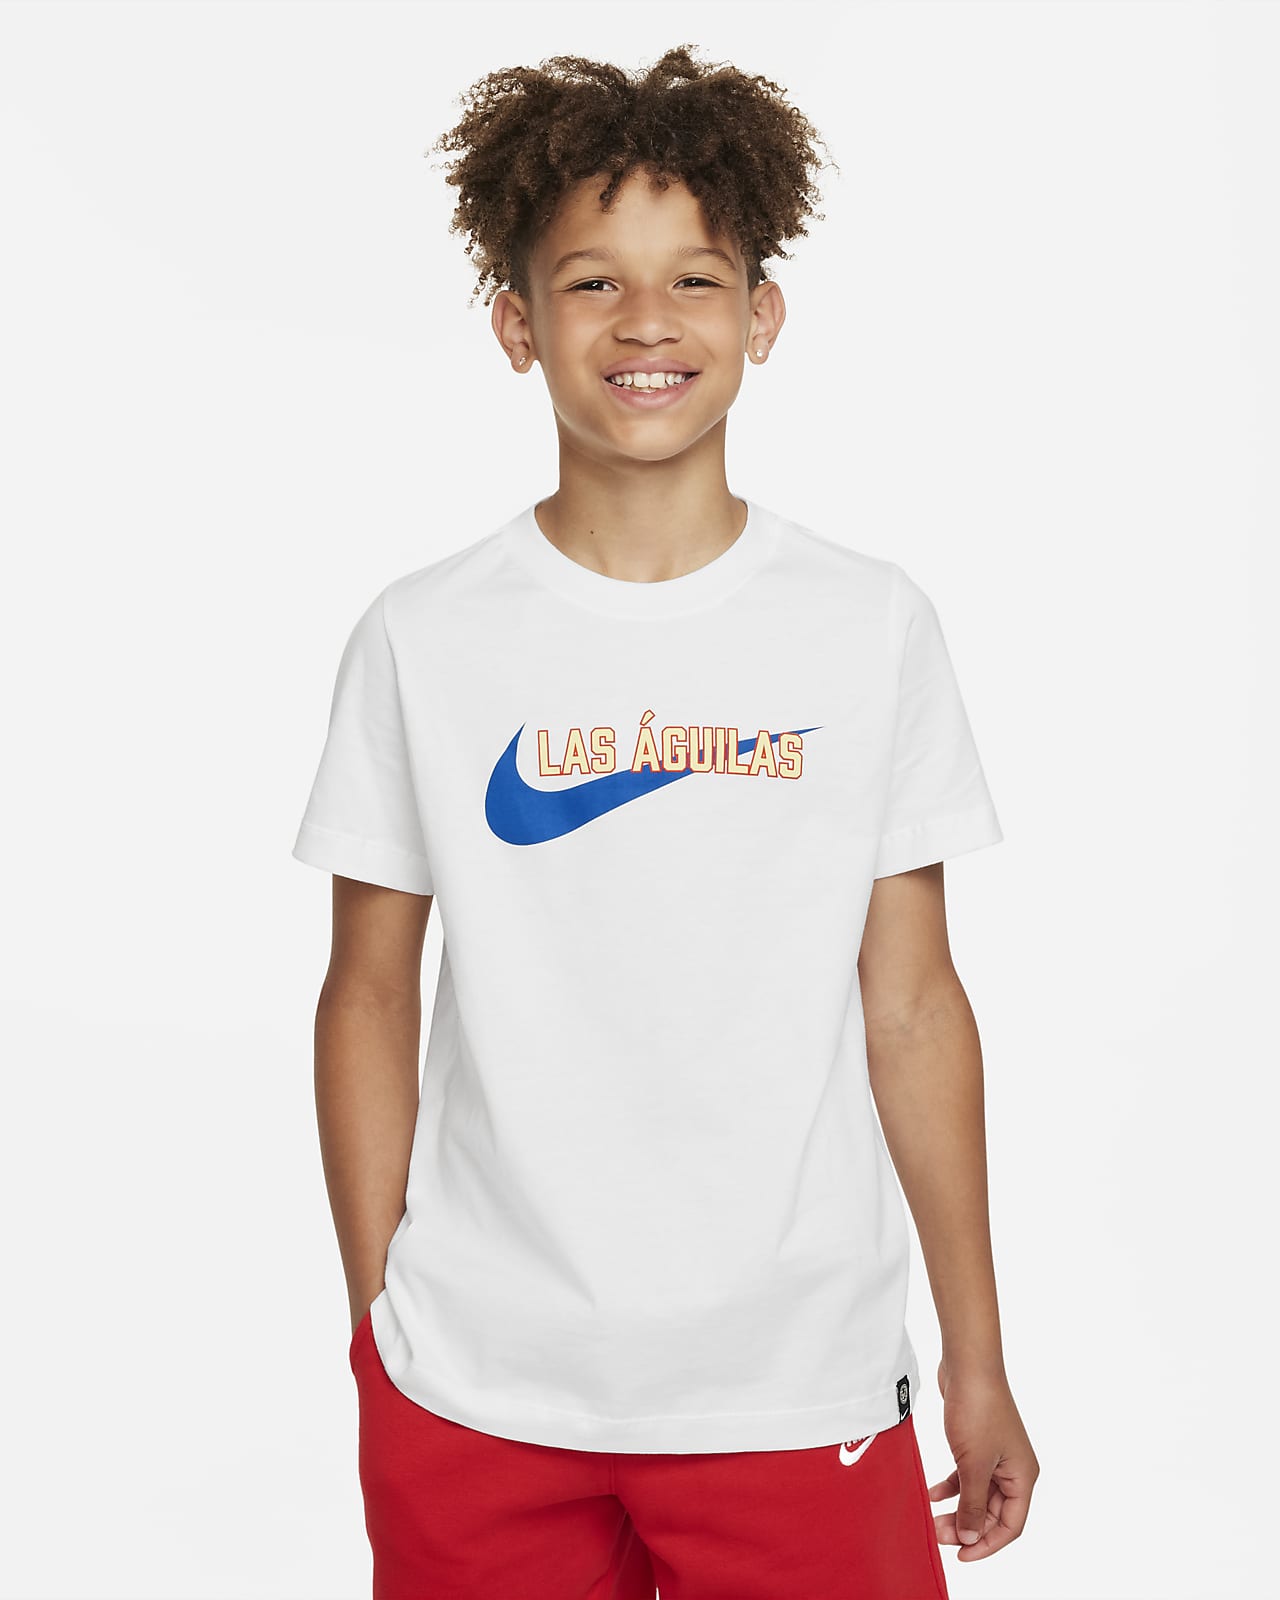 Club América Big Kids' Nike Soccer T-Shirt